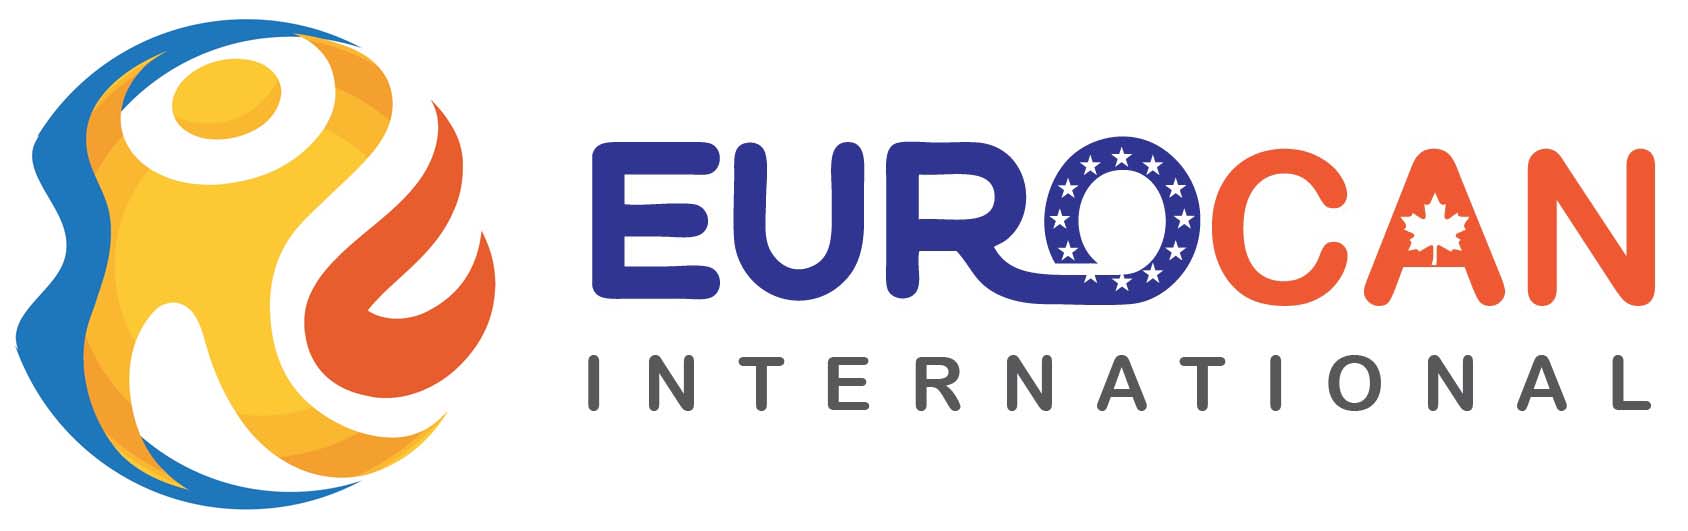 Eurocan Logo International